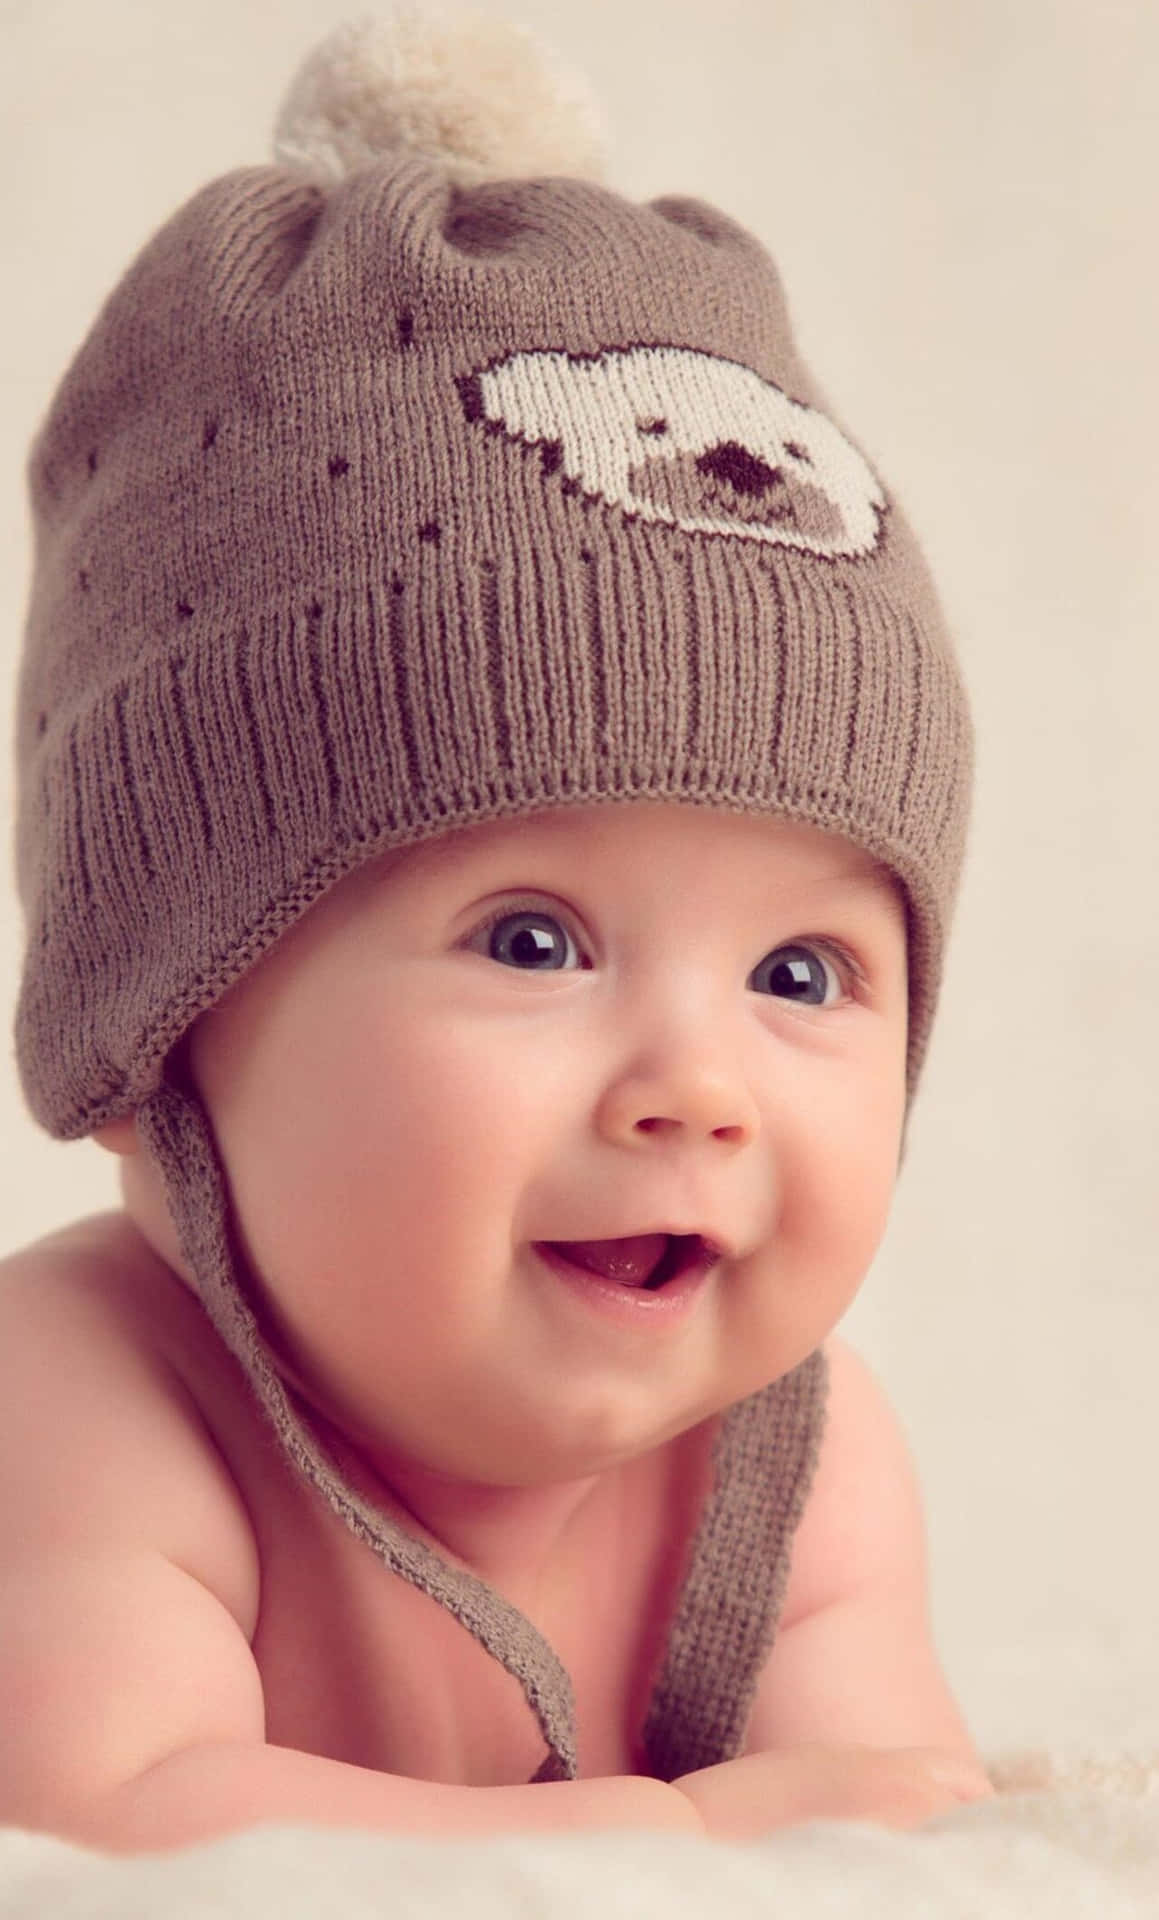 cute smile baby photos